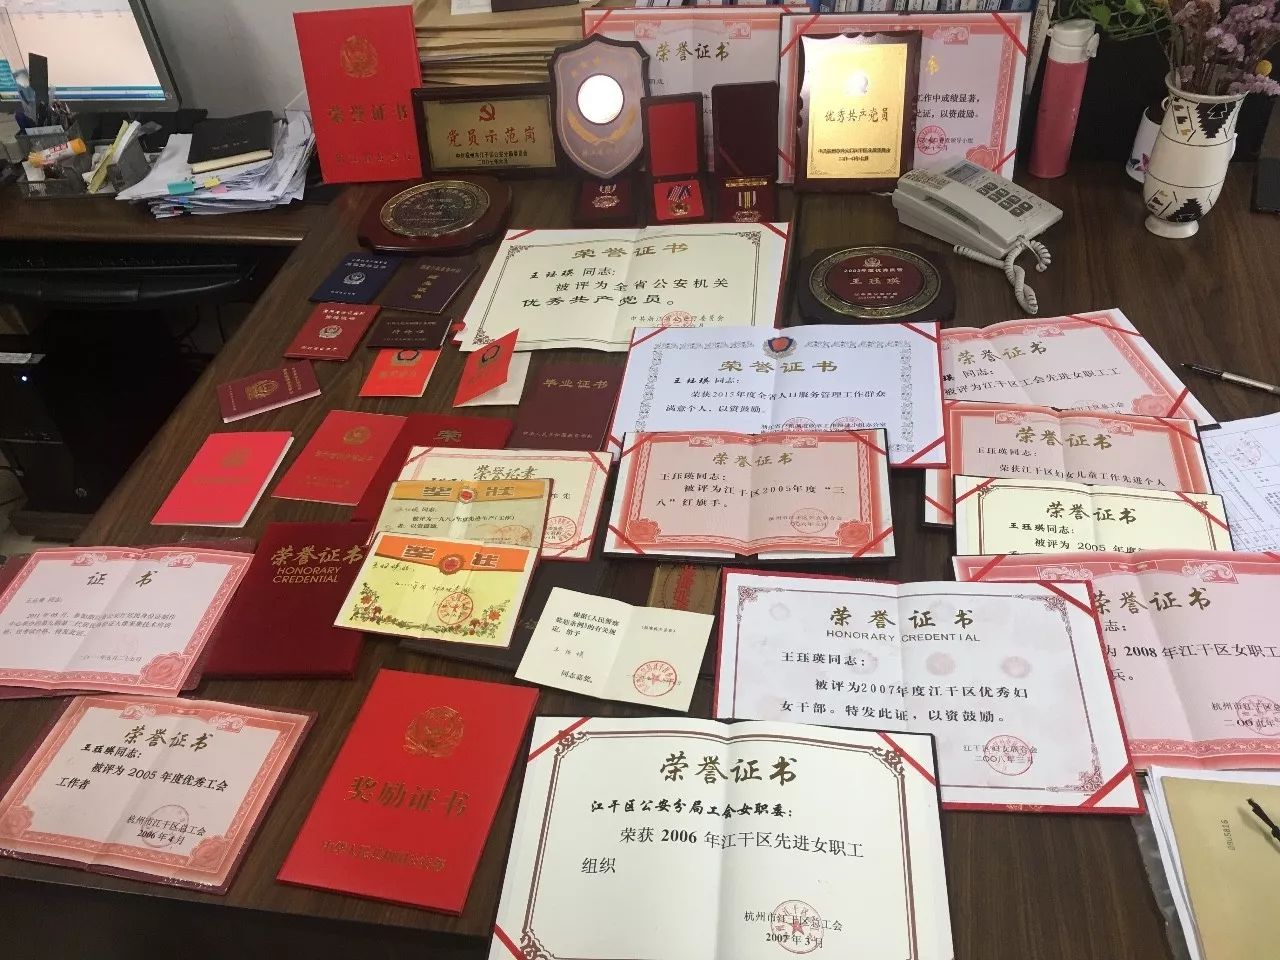 王珏瑛办公室的书橱中,摆放着一摞摞的奖状,嘉奖证书,还有各种奖杯和